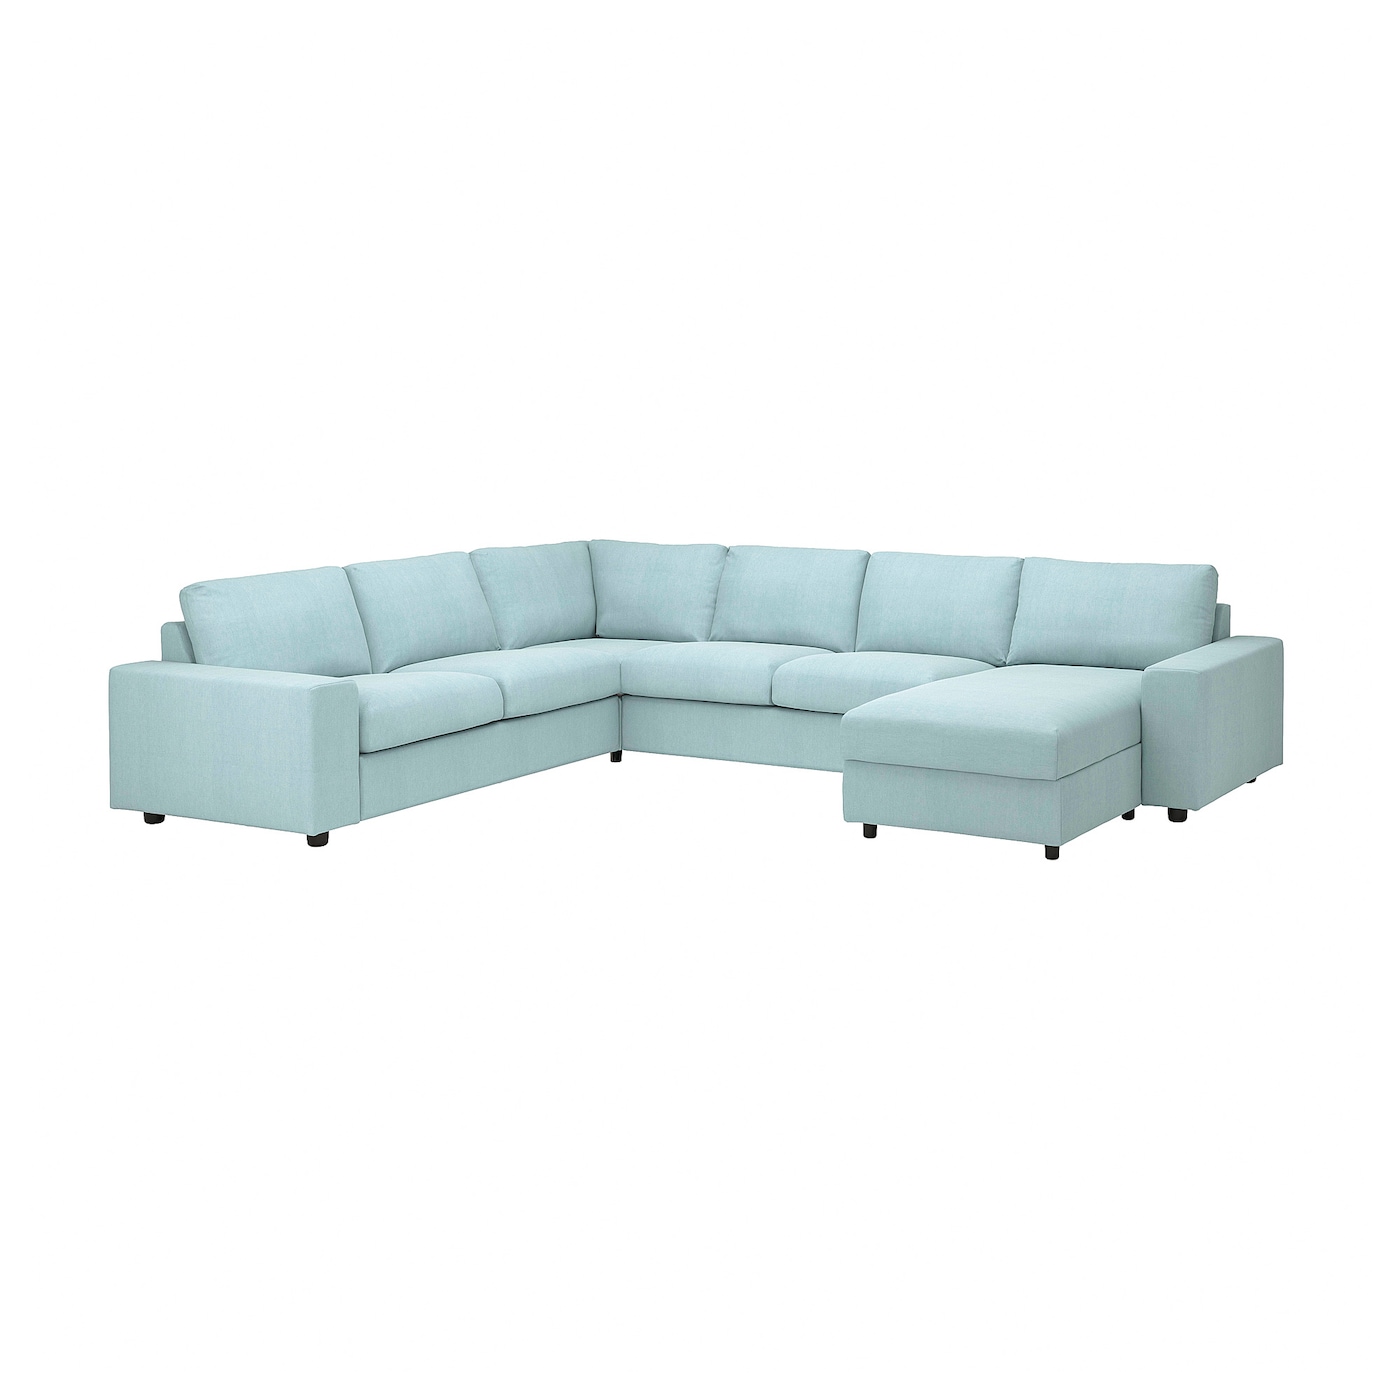 ВИМЛЕ Диван угловой, 5-местный. диван+диван, с широкими подлокотниками/Саксемара светло-синий VIMLE IKEA журнал синий диван 8